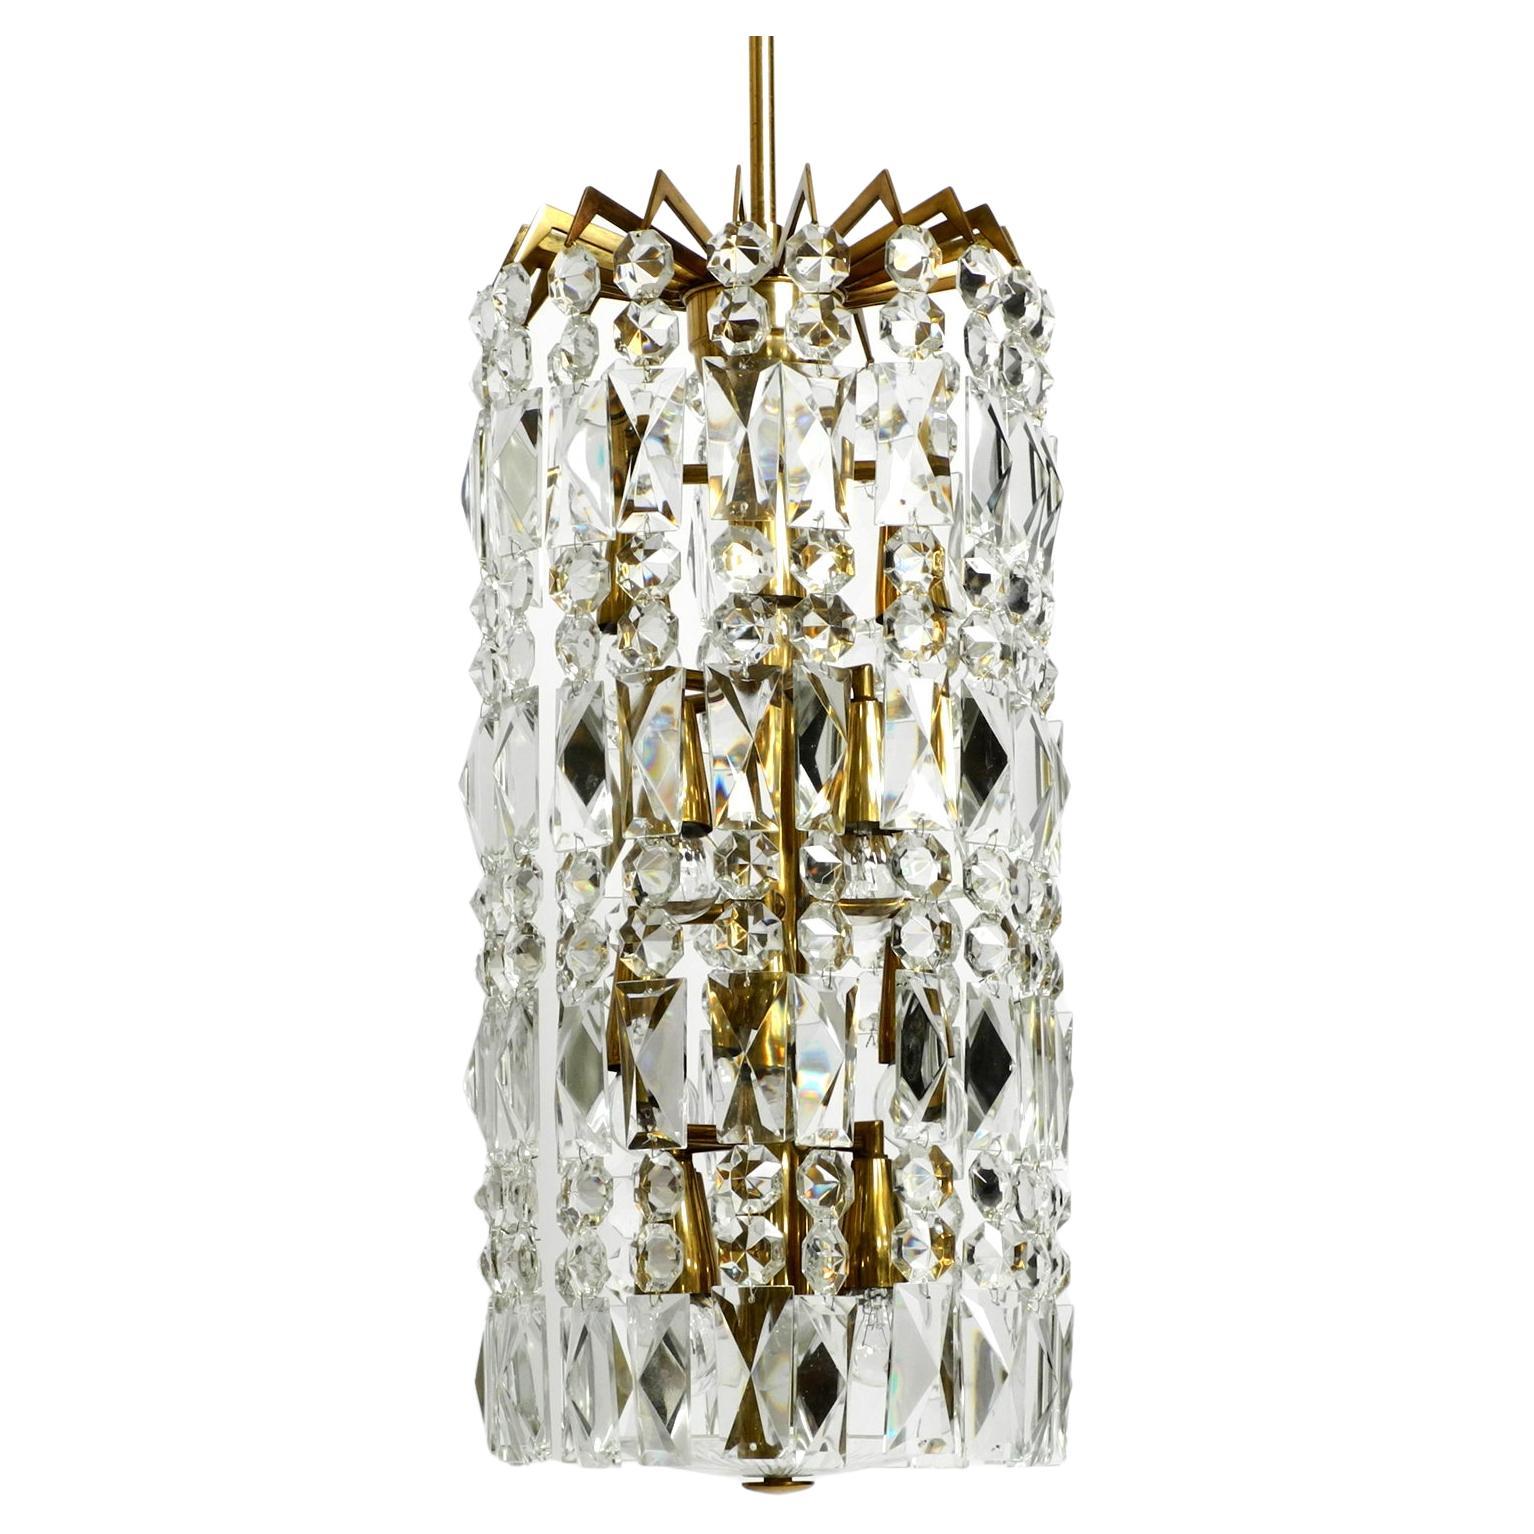 Beautiful Midcentury Brass Crystal Glass Chandelier from Vereinigte Werkstätten For Sale